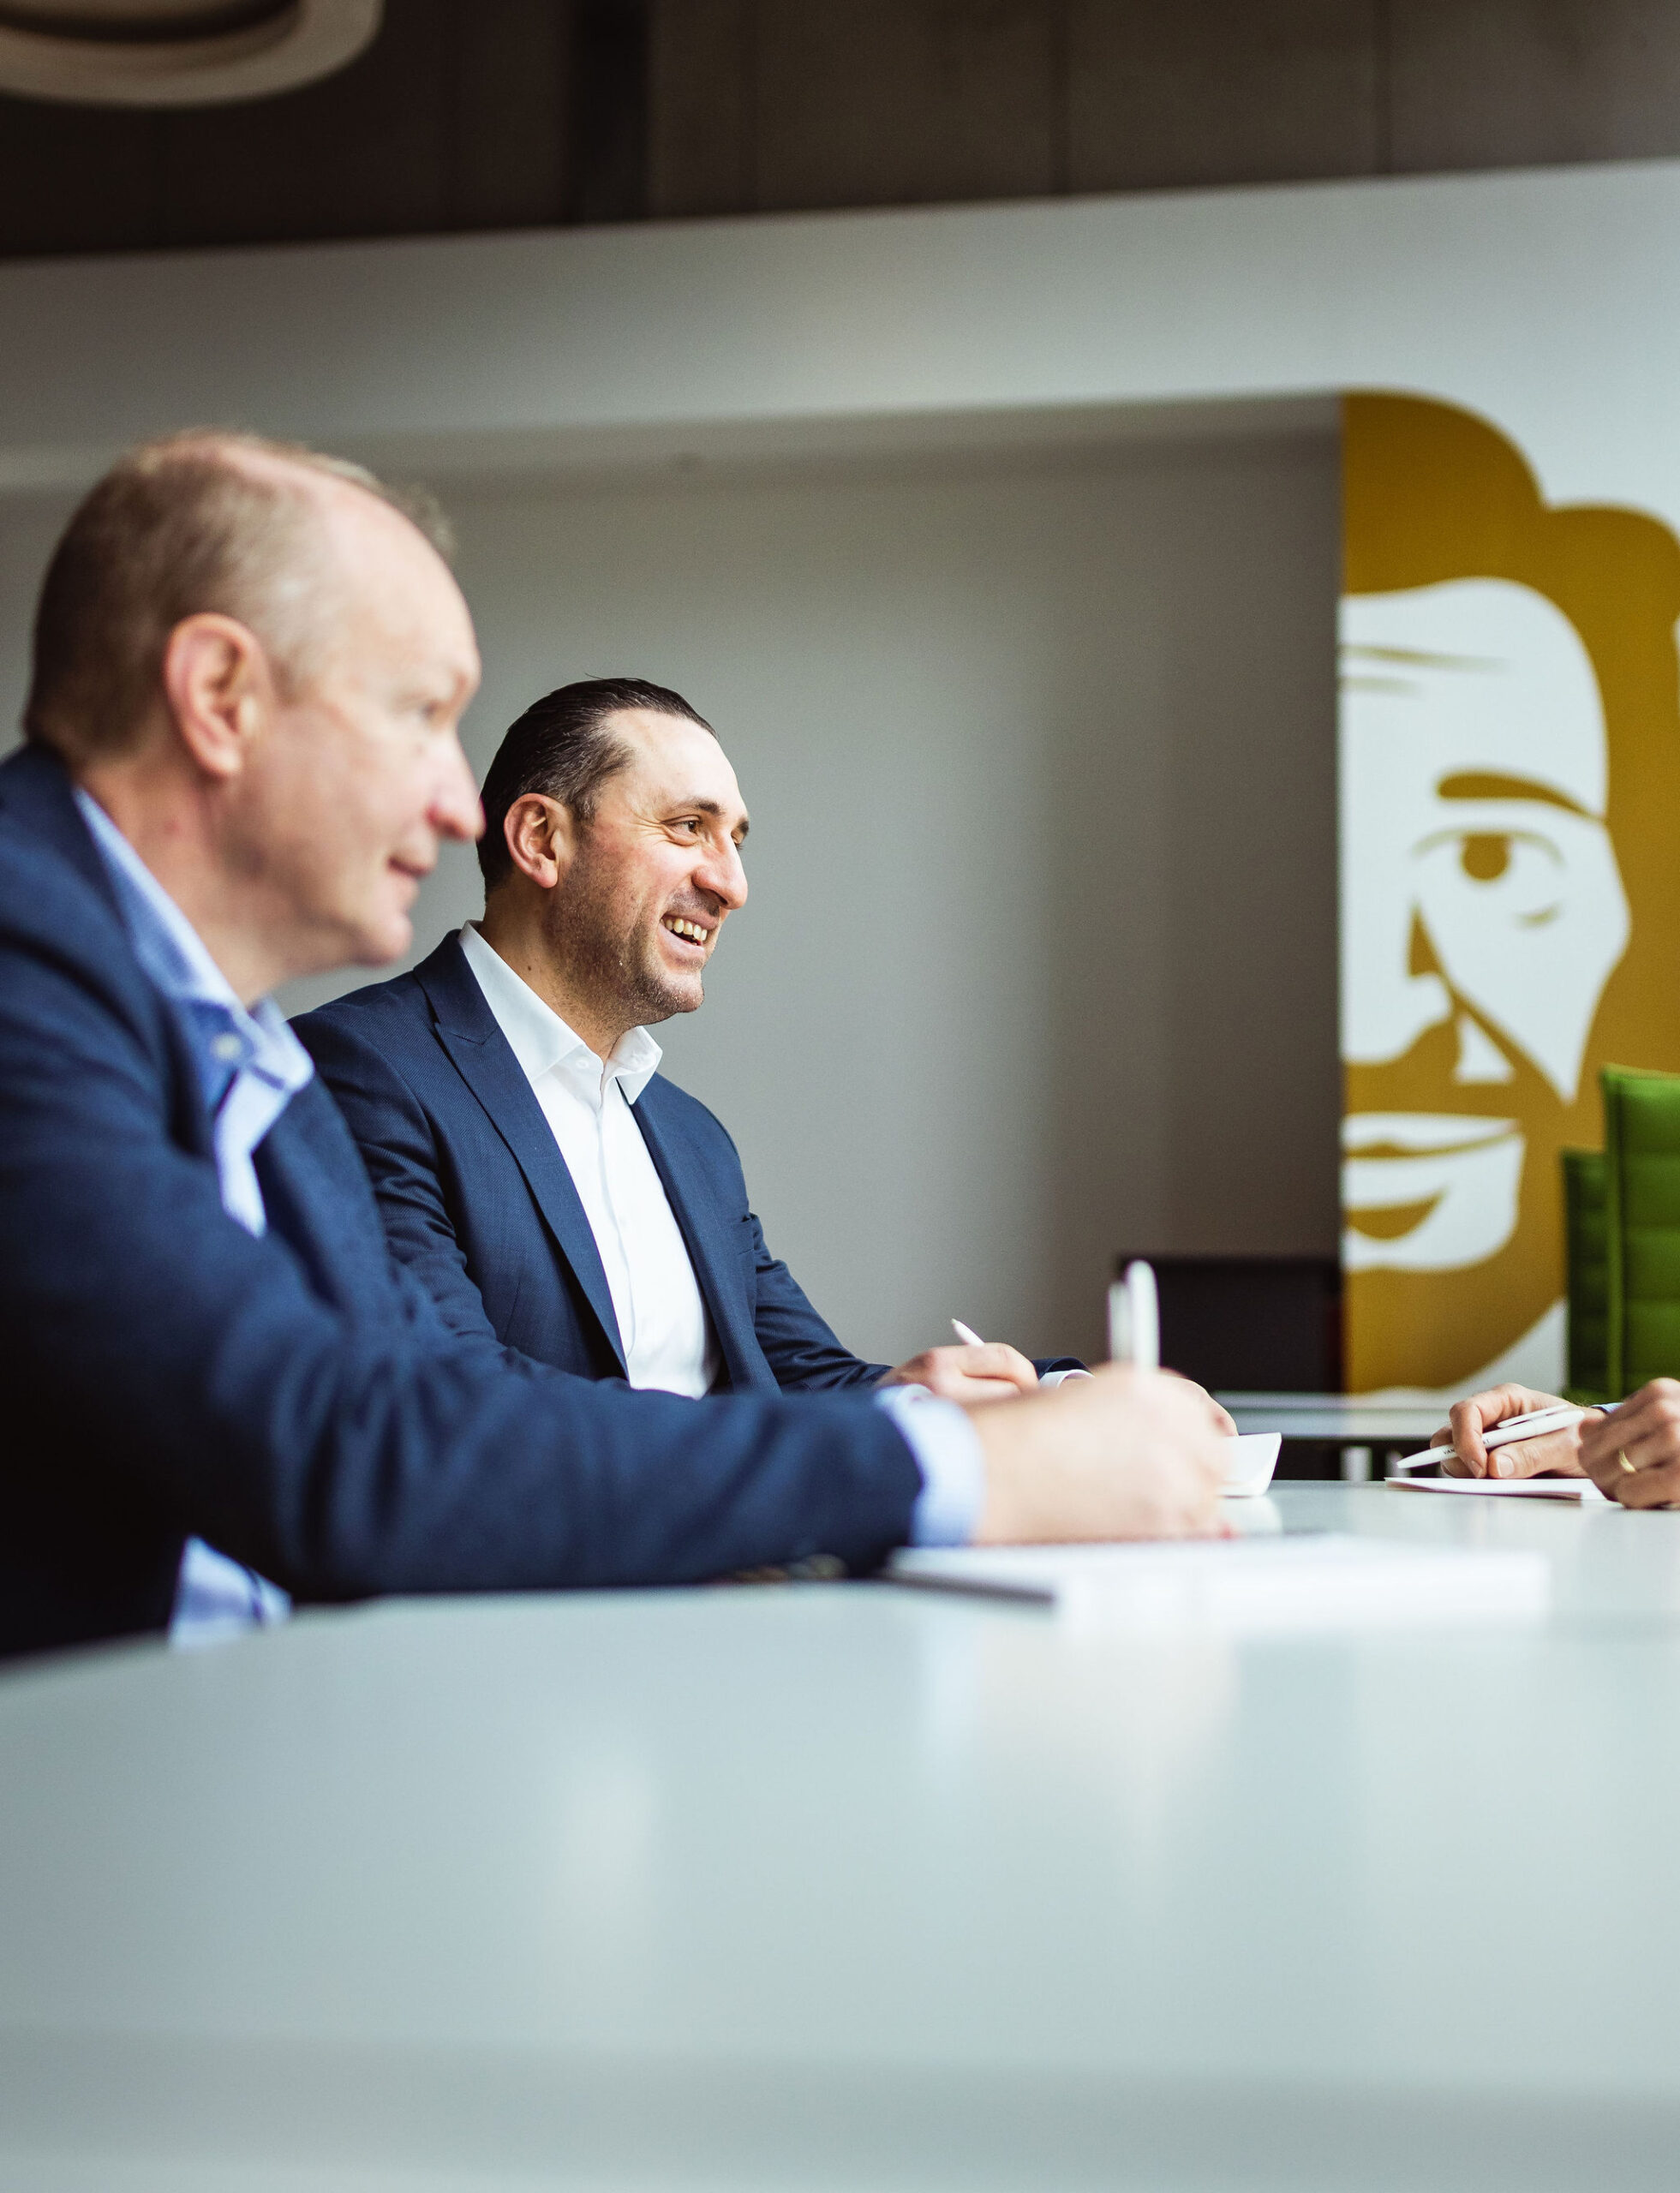 Twee collega's die werken bij Van Havermaet zitten aan tafel tijdens een vergadering. Op de achtergrond prijkt het logo van Van Havermaet in het groot.